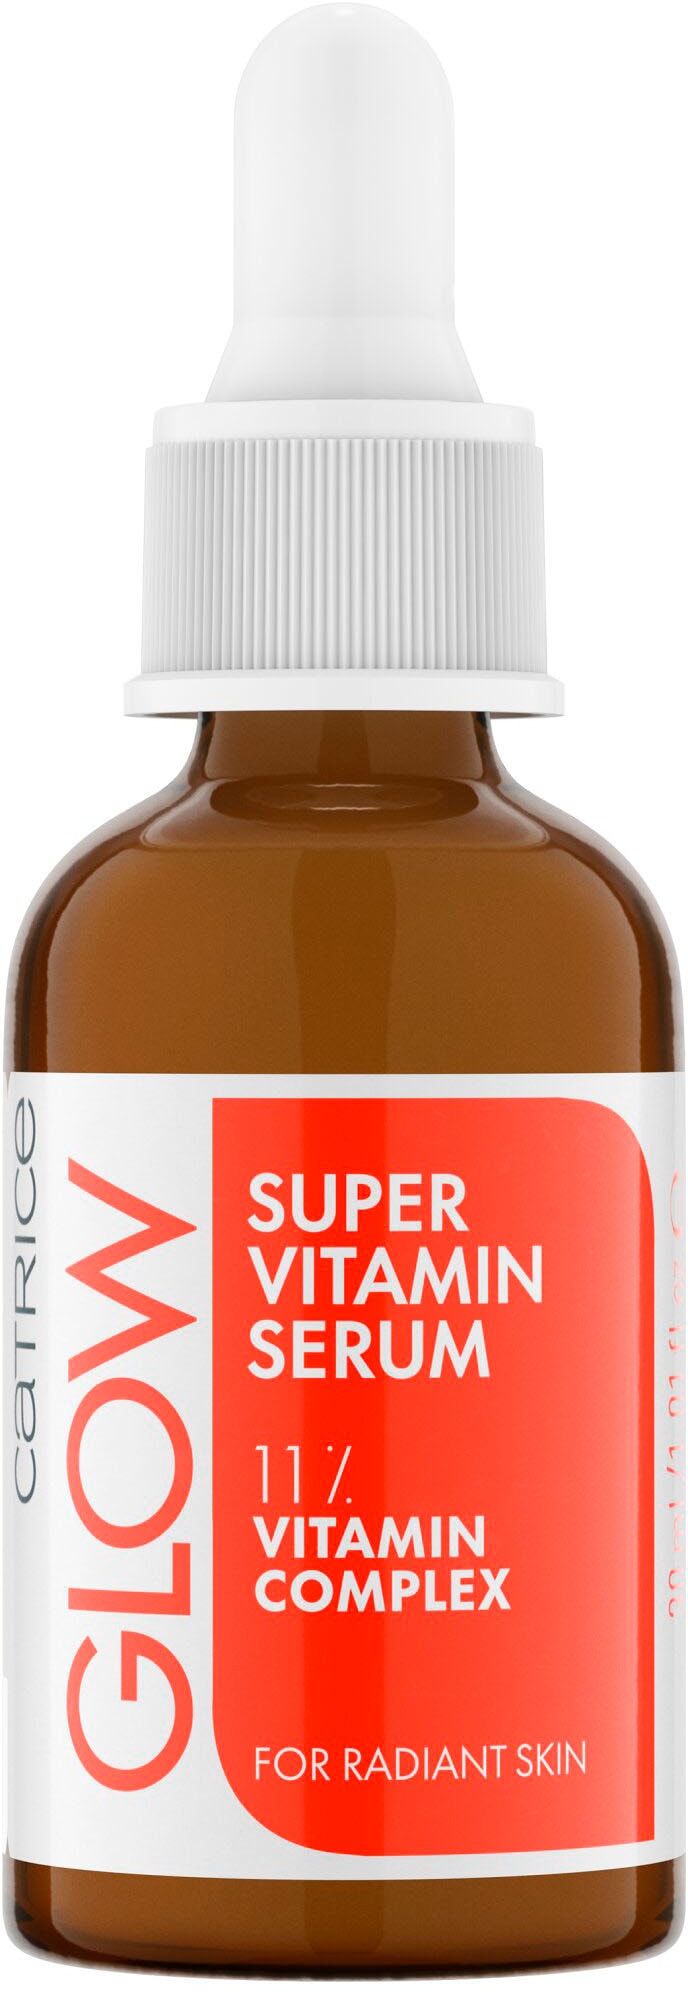 Vitamin Super kaufen »Glow Catrice online Serum« Gesichtsserum